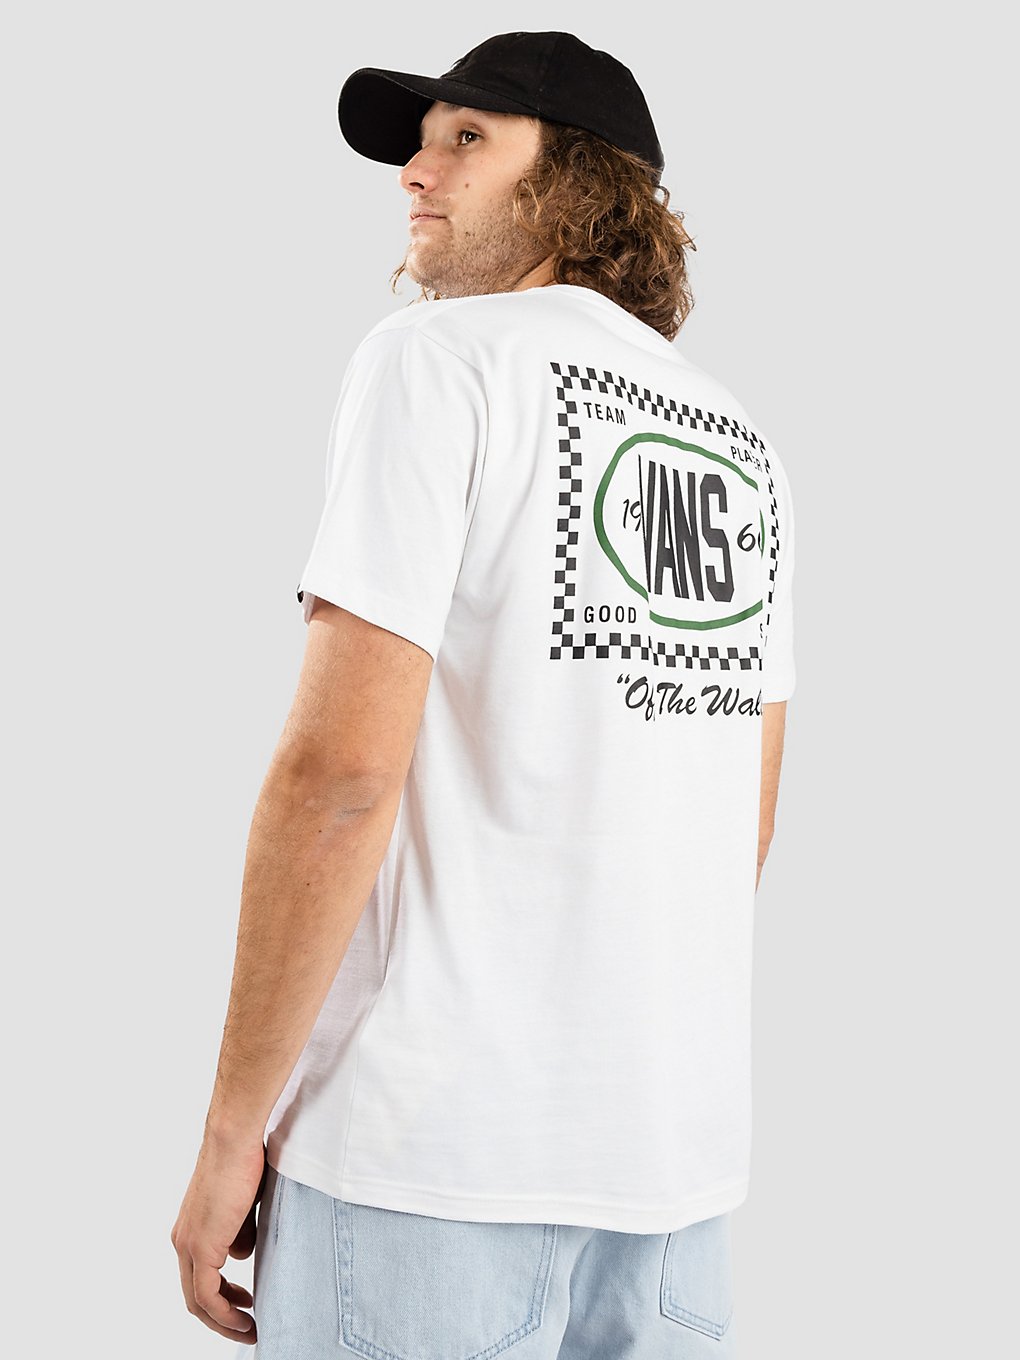 Vans Team Player Checkerboard T-Shirt white kaufen